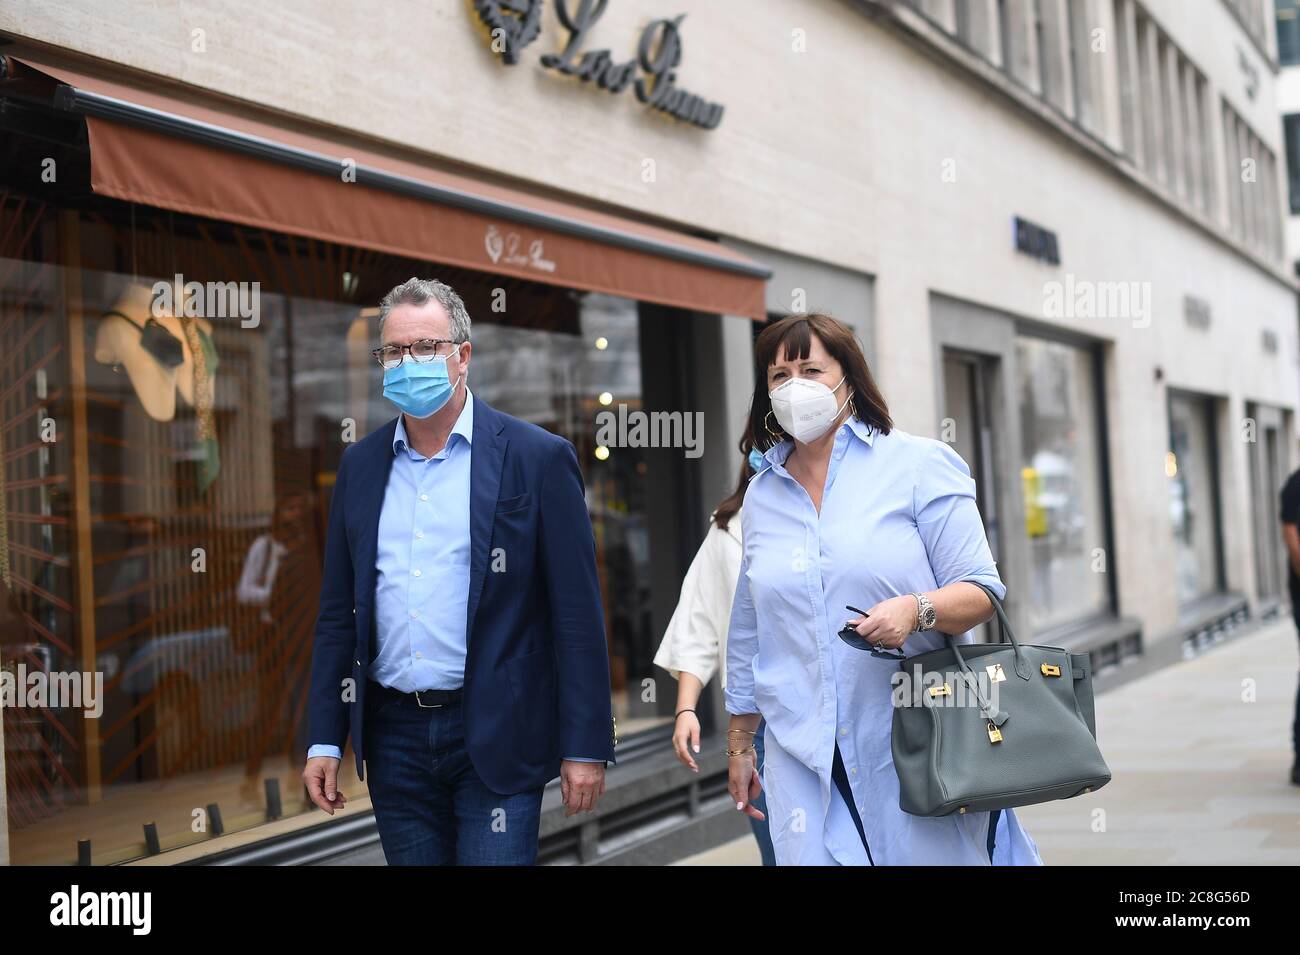 In der Bond Street in London werden Gesichtsmasken von Käufern getragen, da Gesichtsbezüge in Geschäften und Supermärkten in England obligatorisch werden. Stockfoto